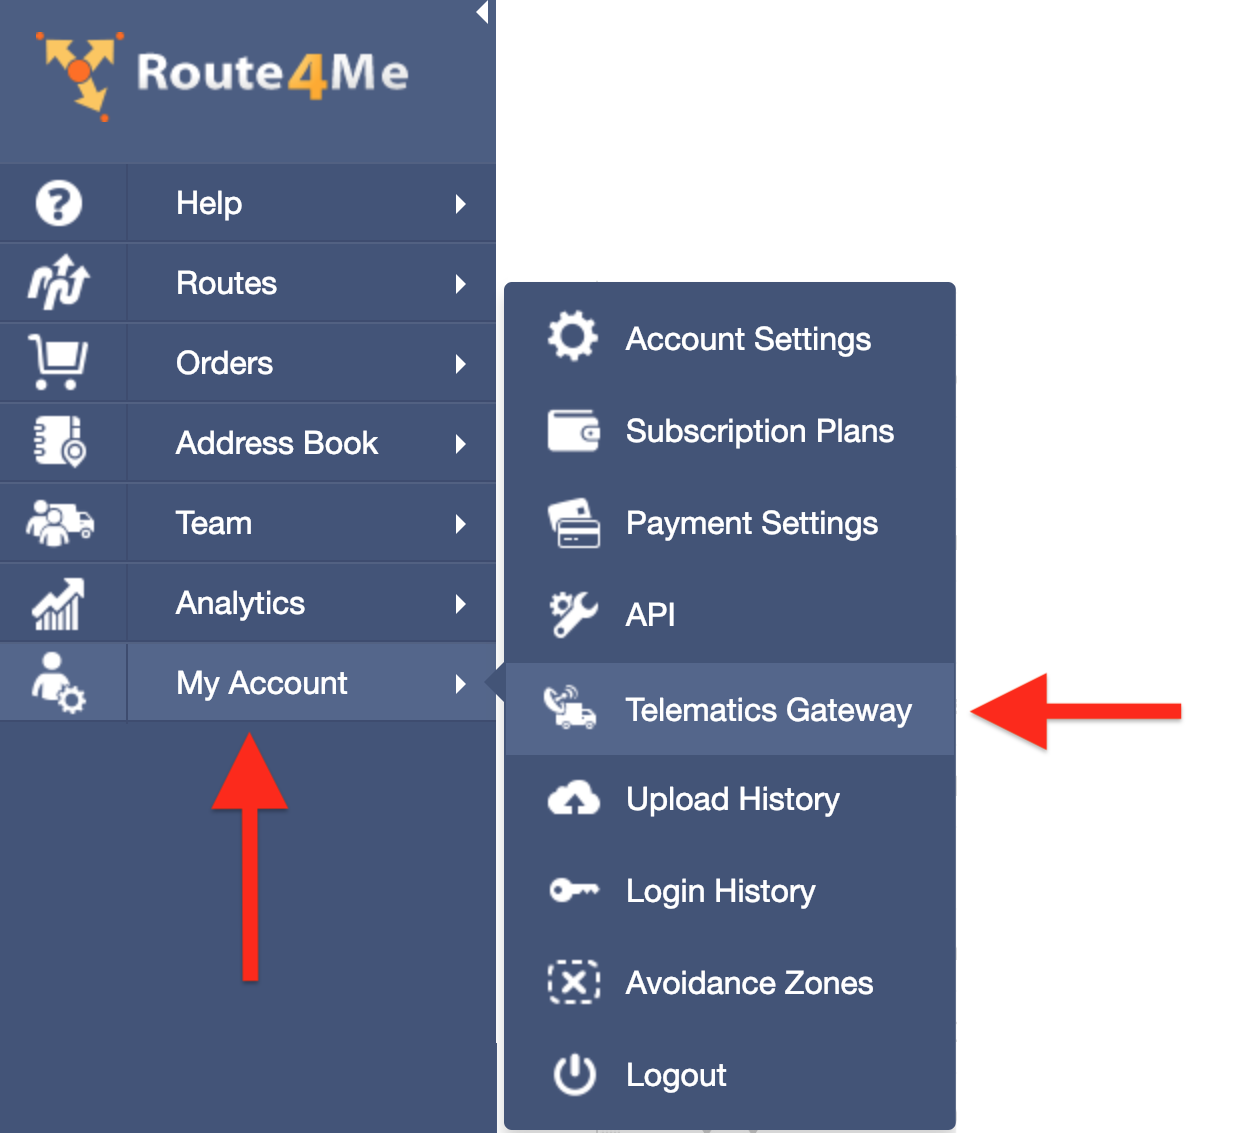 Route4Me's Telematics gateway options